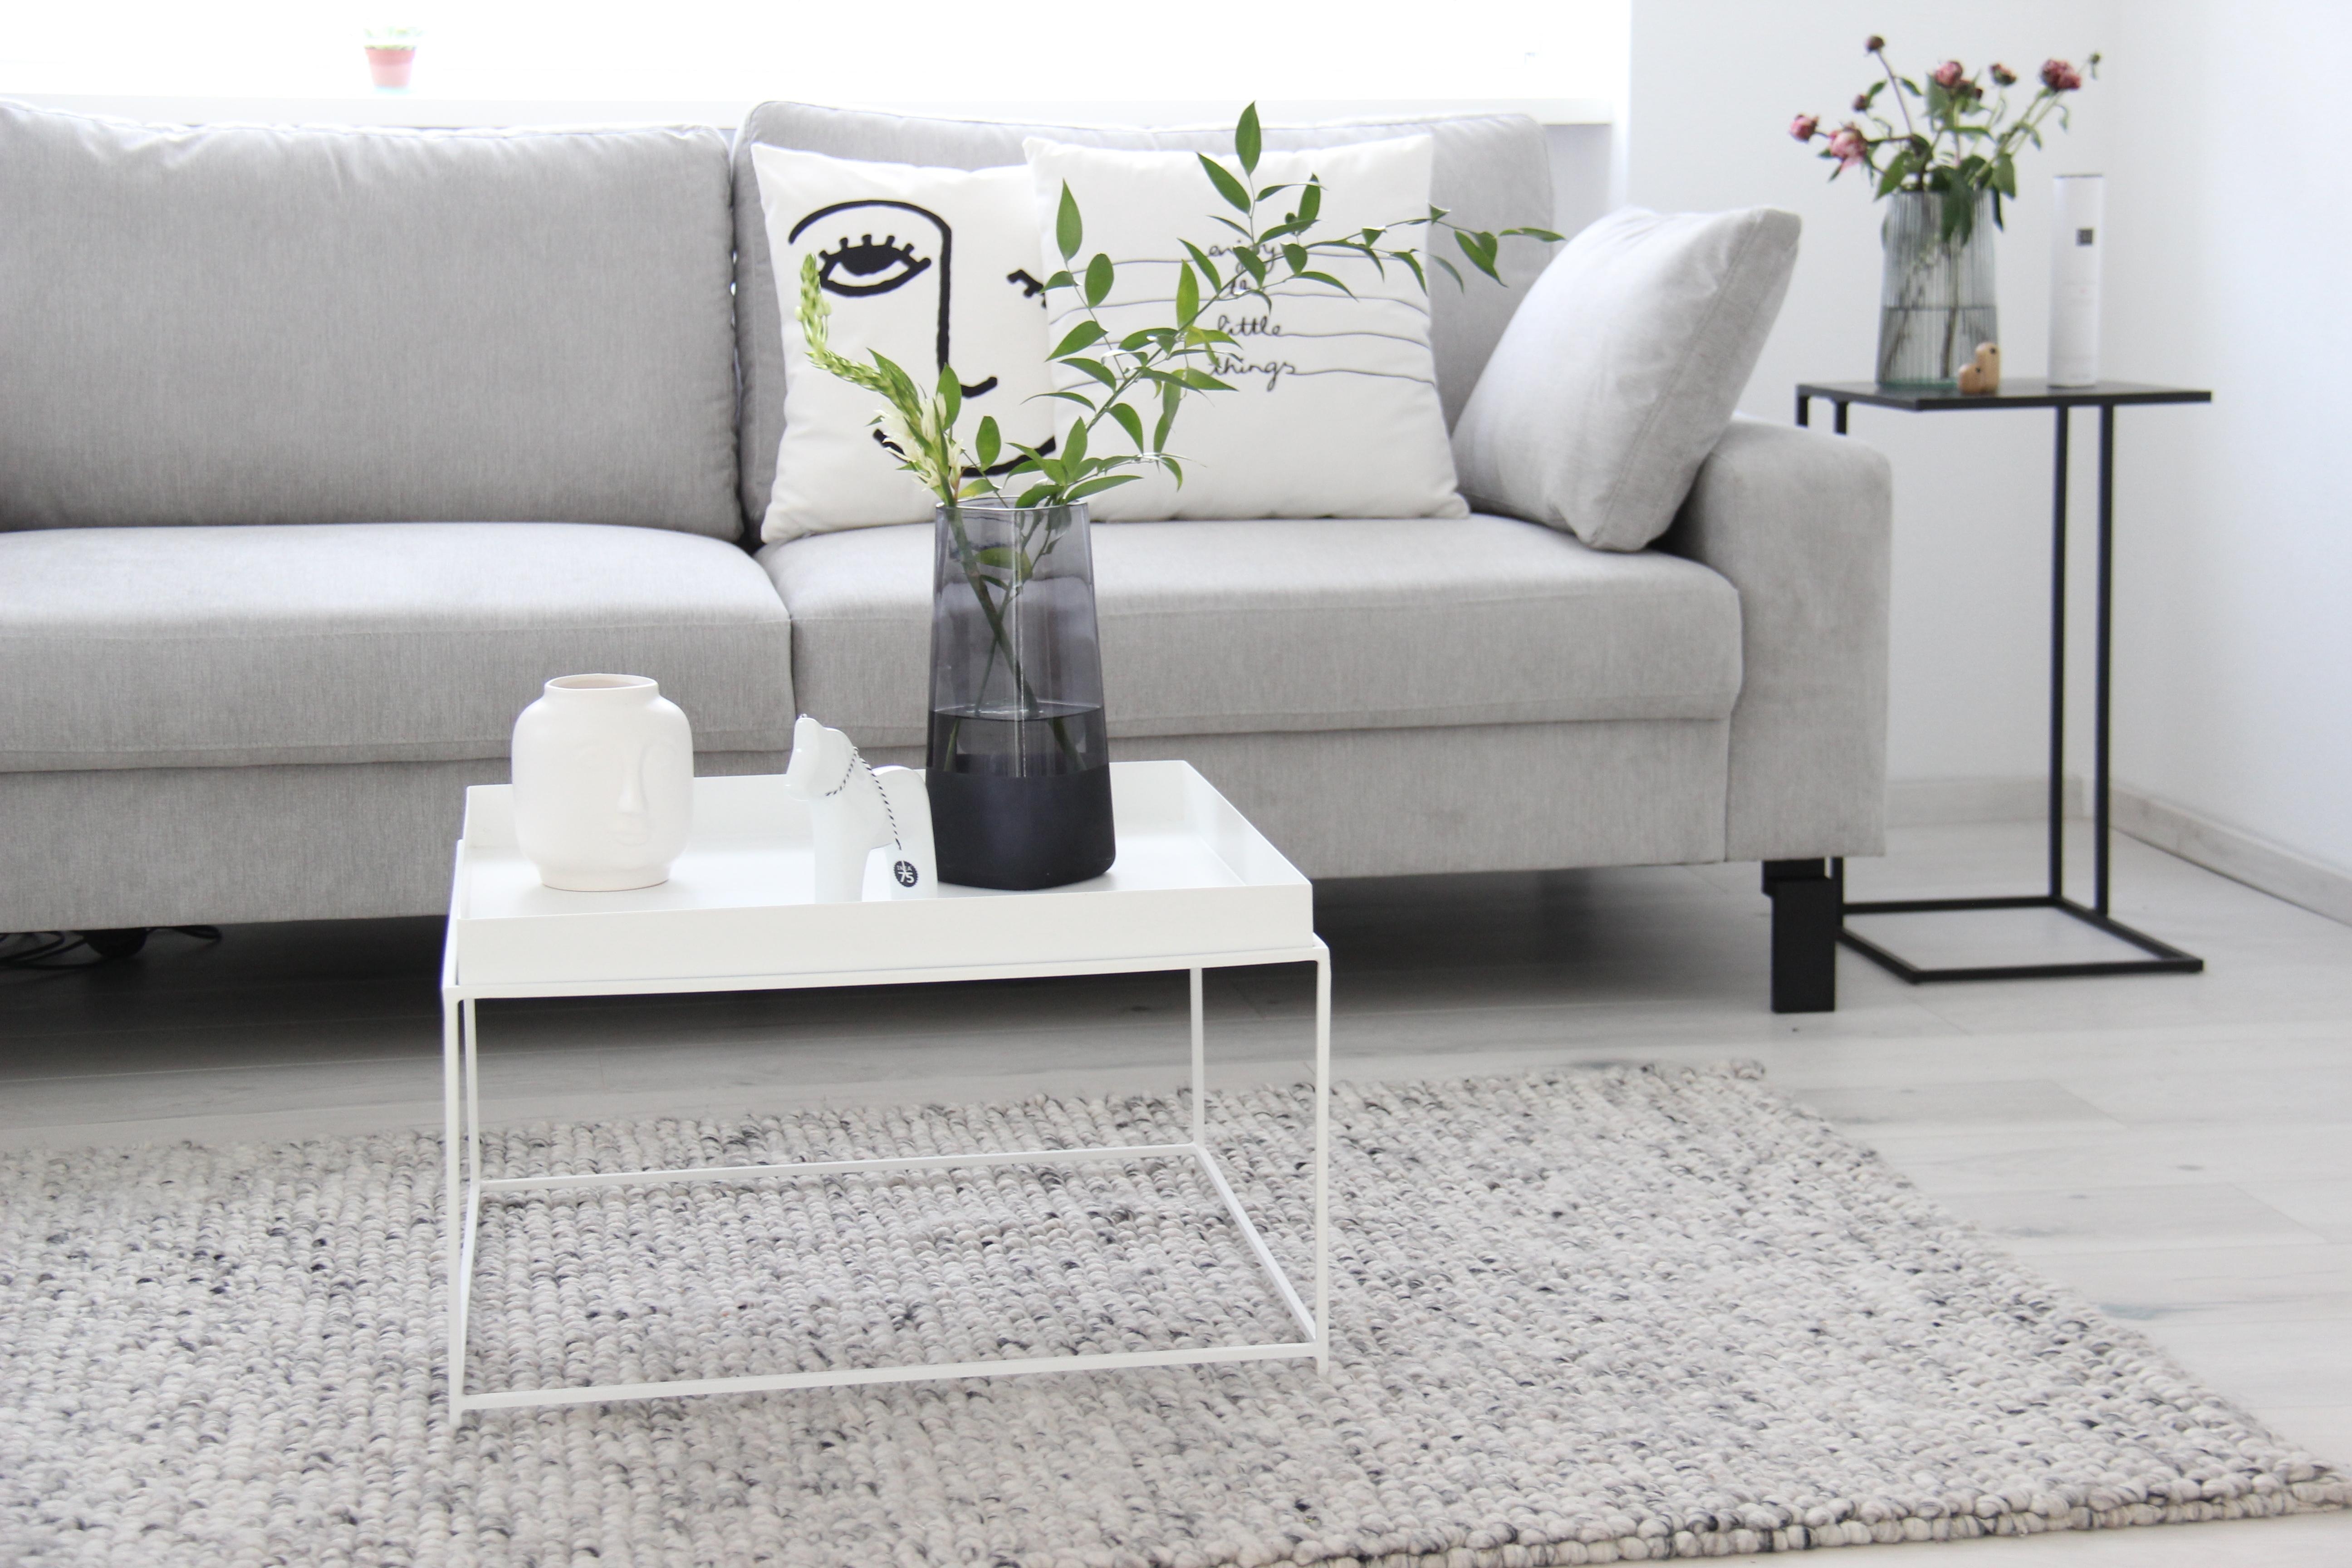 #white #cozy #weekend #couchstyle #couchliebt #Wohnzimmer #livingroom #altbau